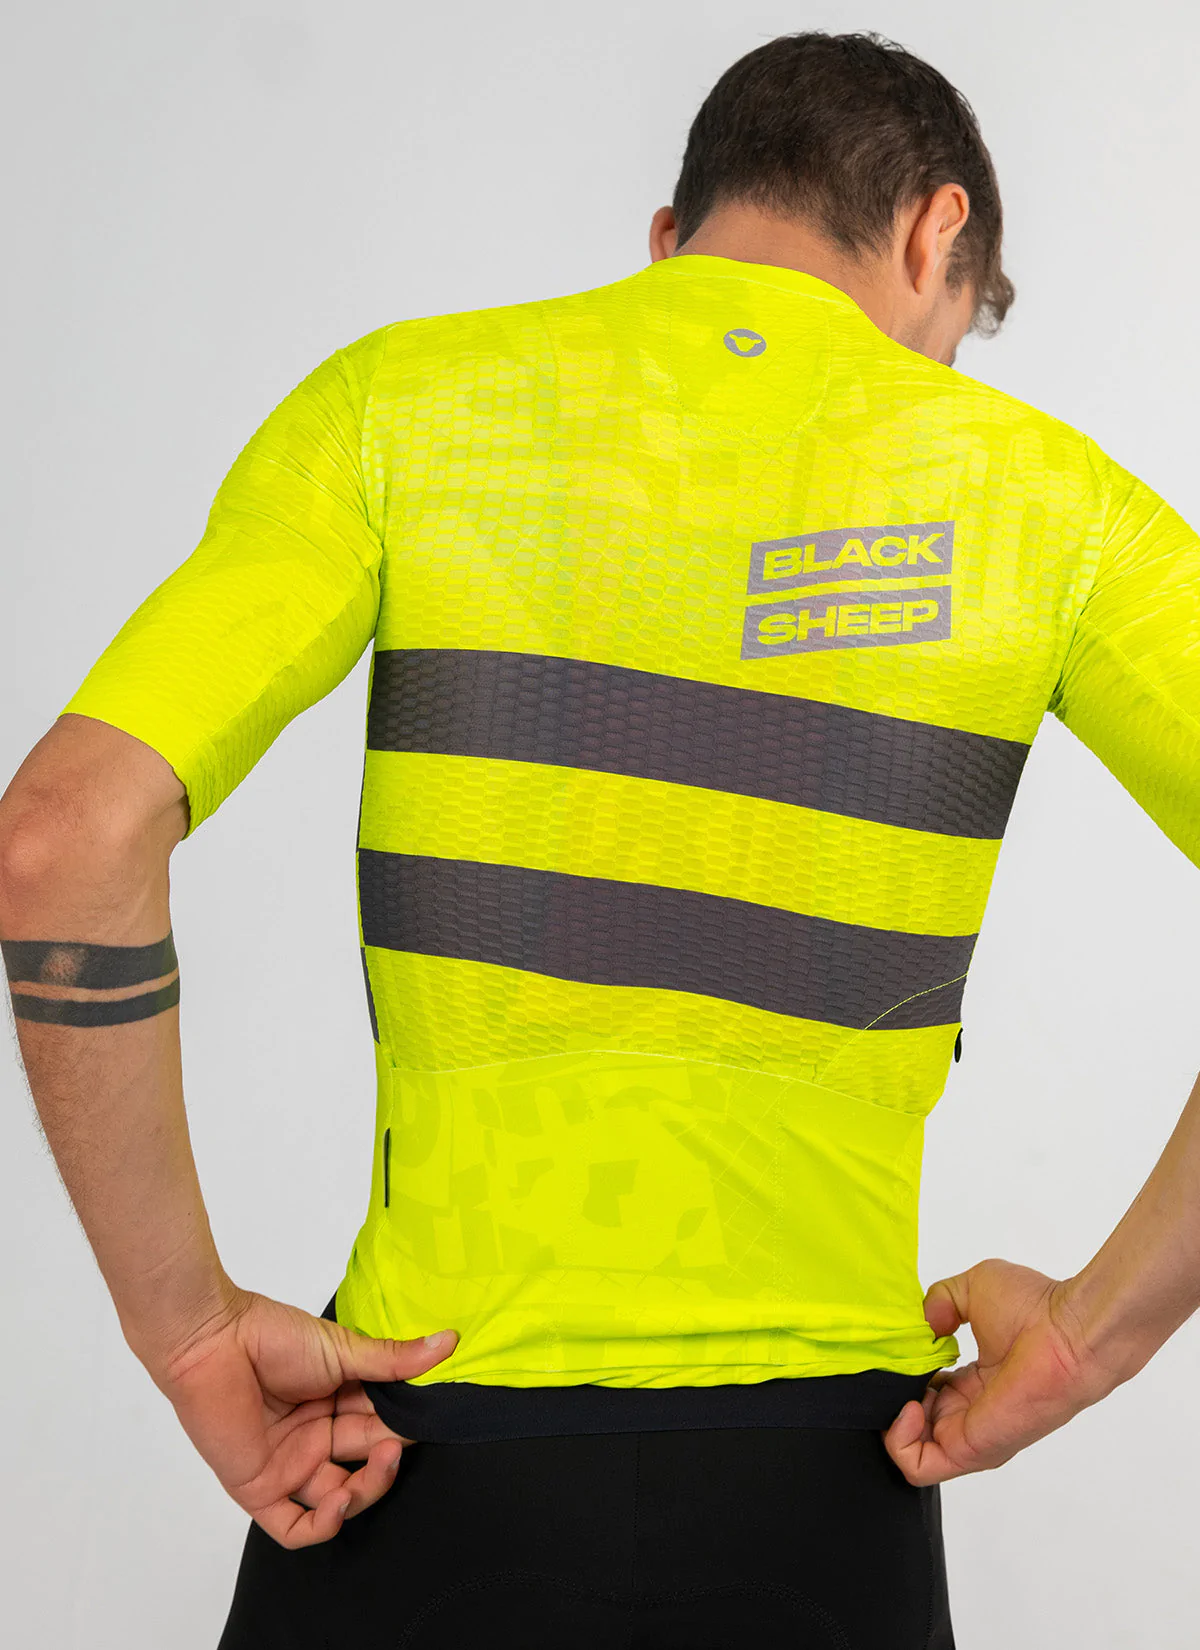 maillot-blacksheep-tour-avenir-edition-speciale-jaune-cyclisme-dos